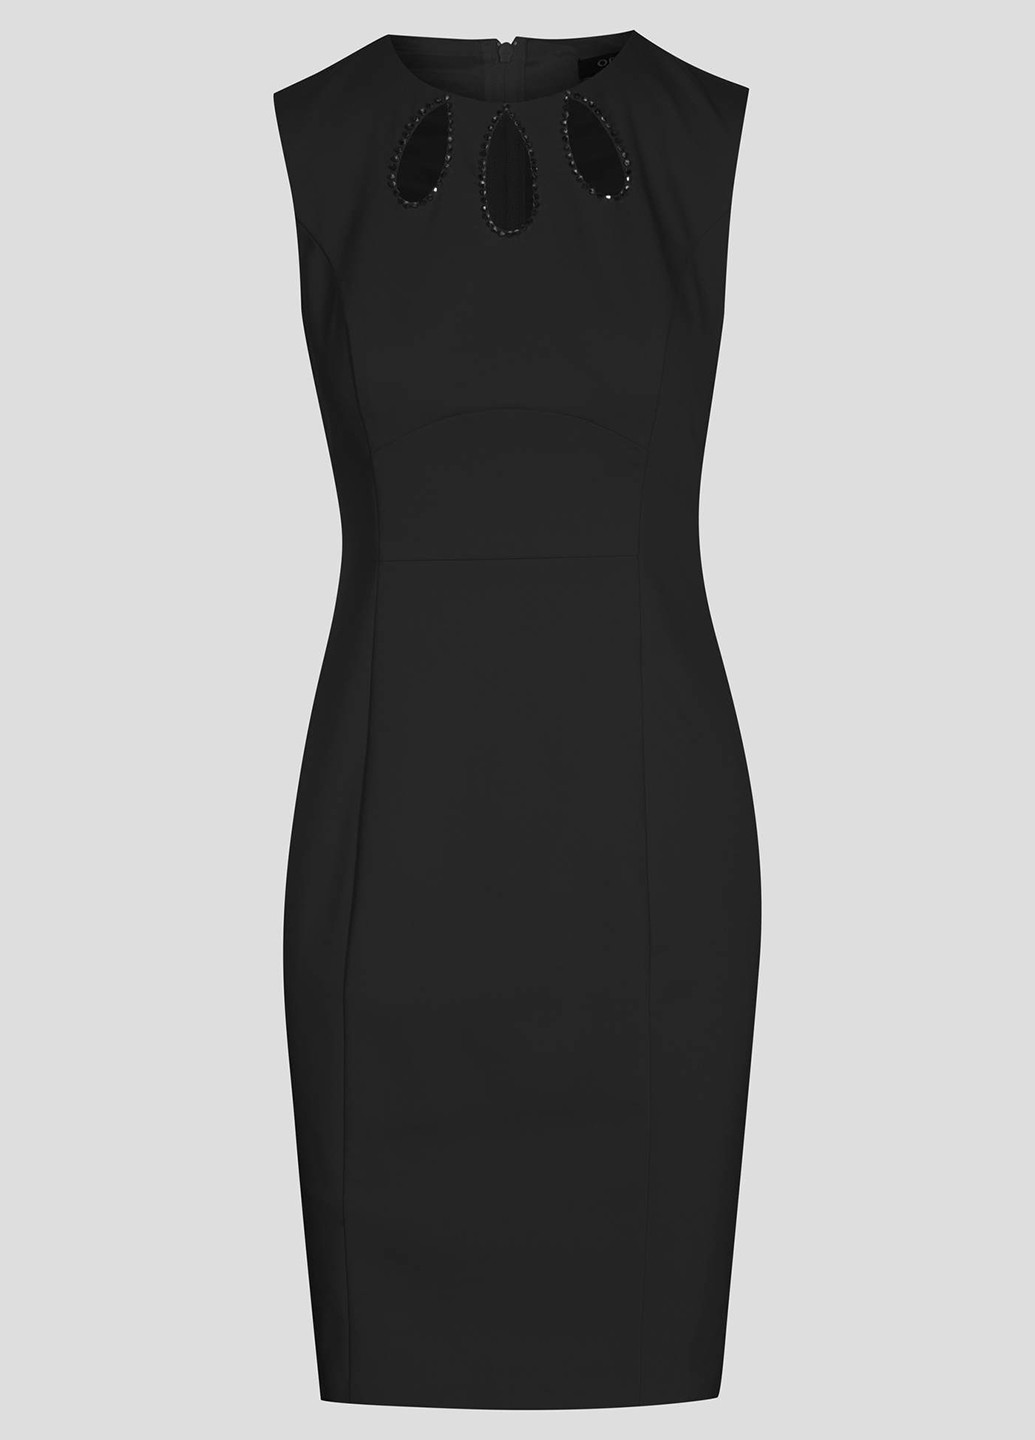 Черное коктейльное платье с посадкой по талии Orsay однотонное